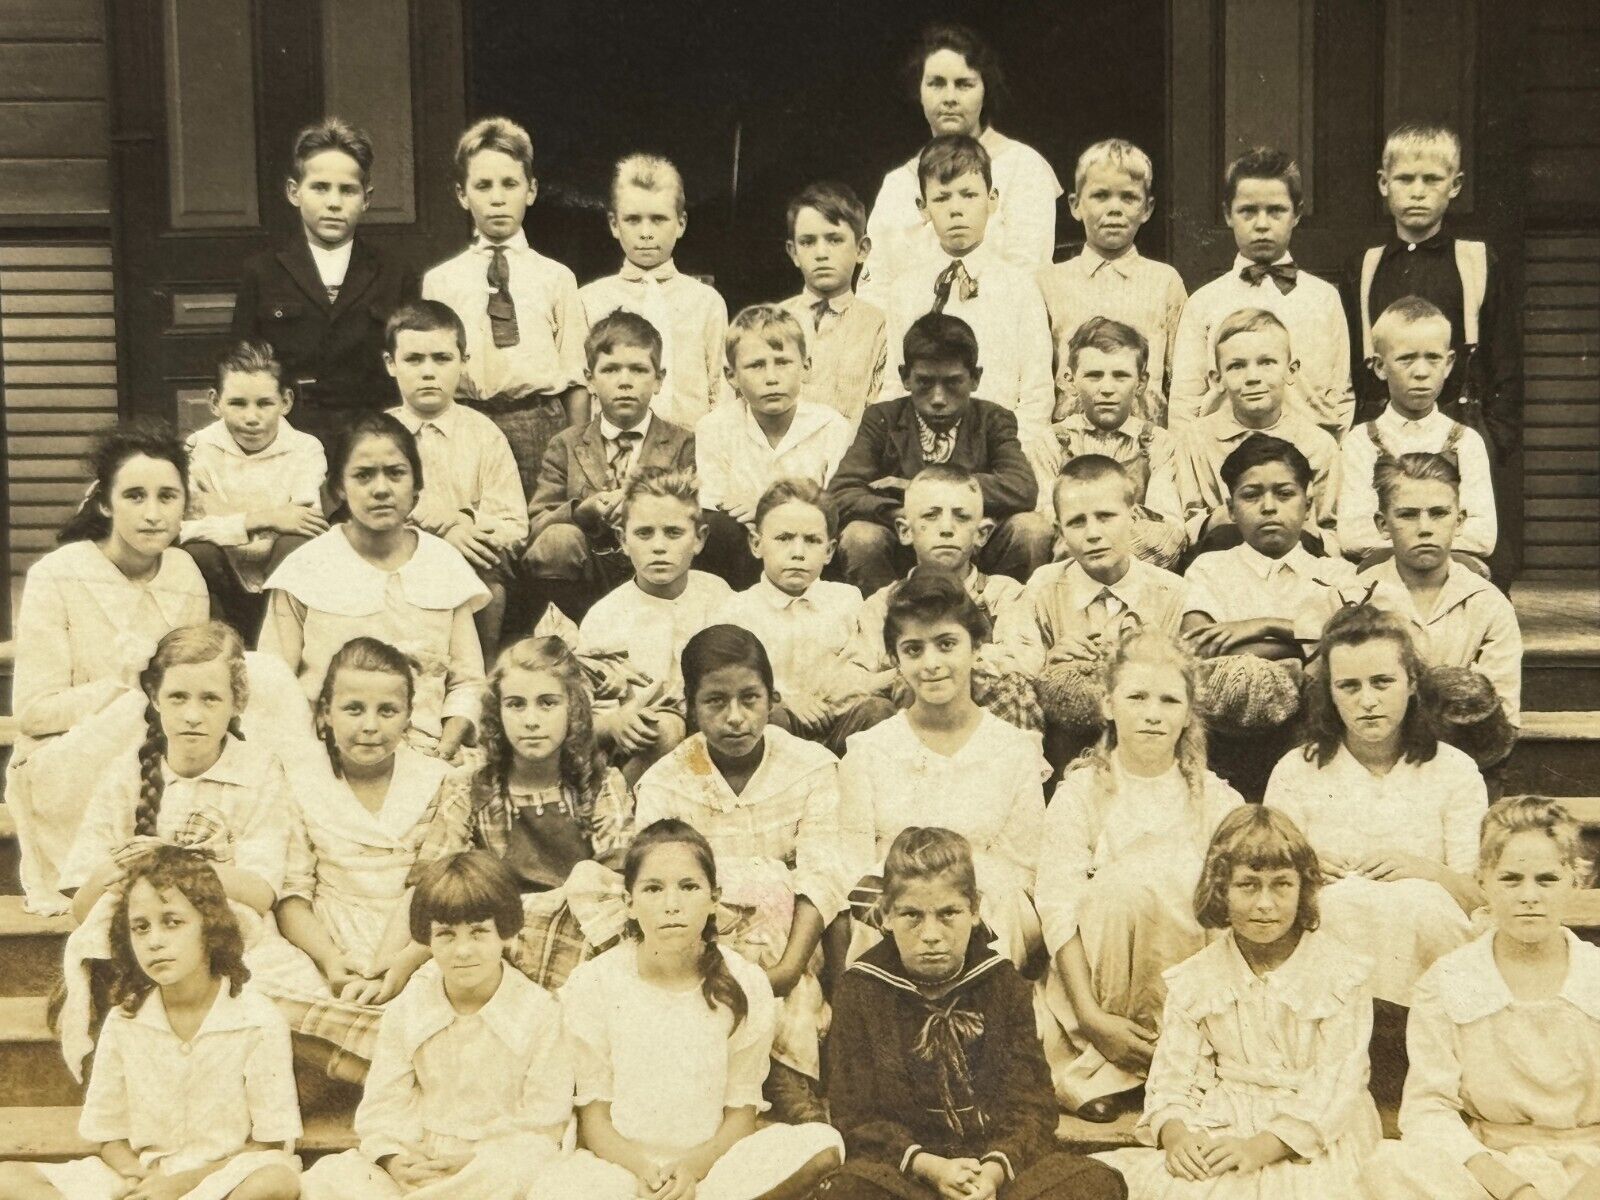 2R Photograph Group Class School Teacher Kids Boys Girls 1910-20's RPPC Postcard